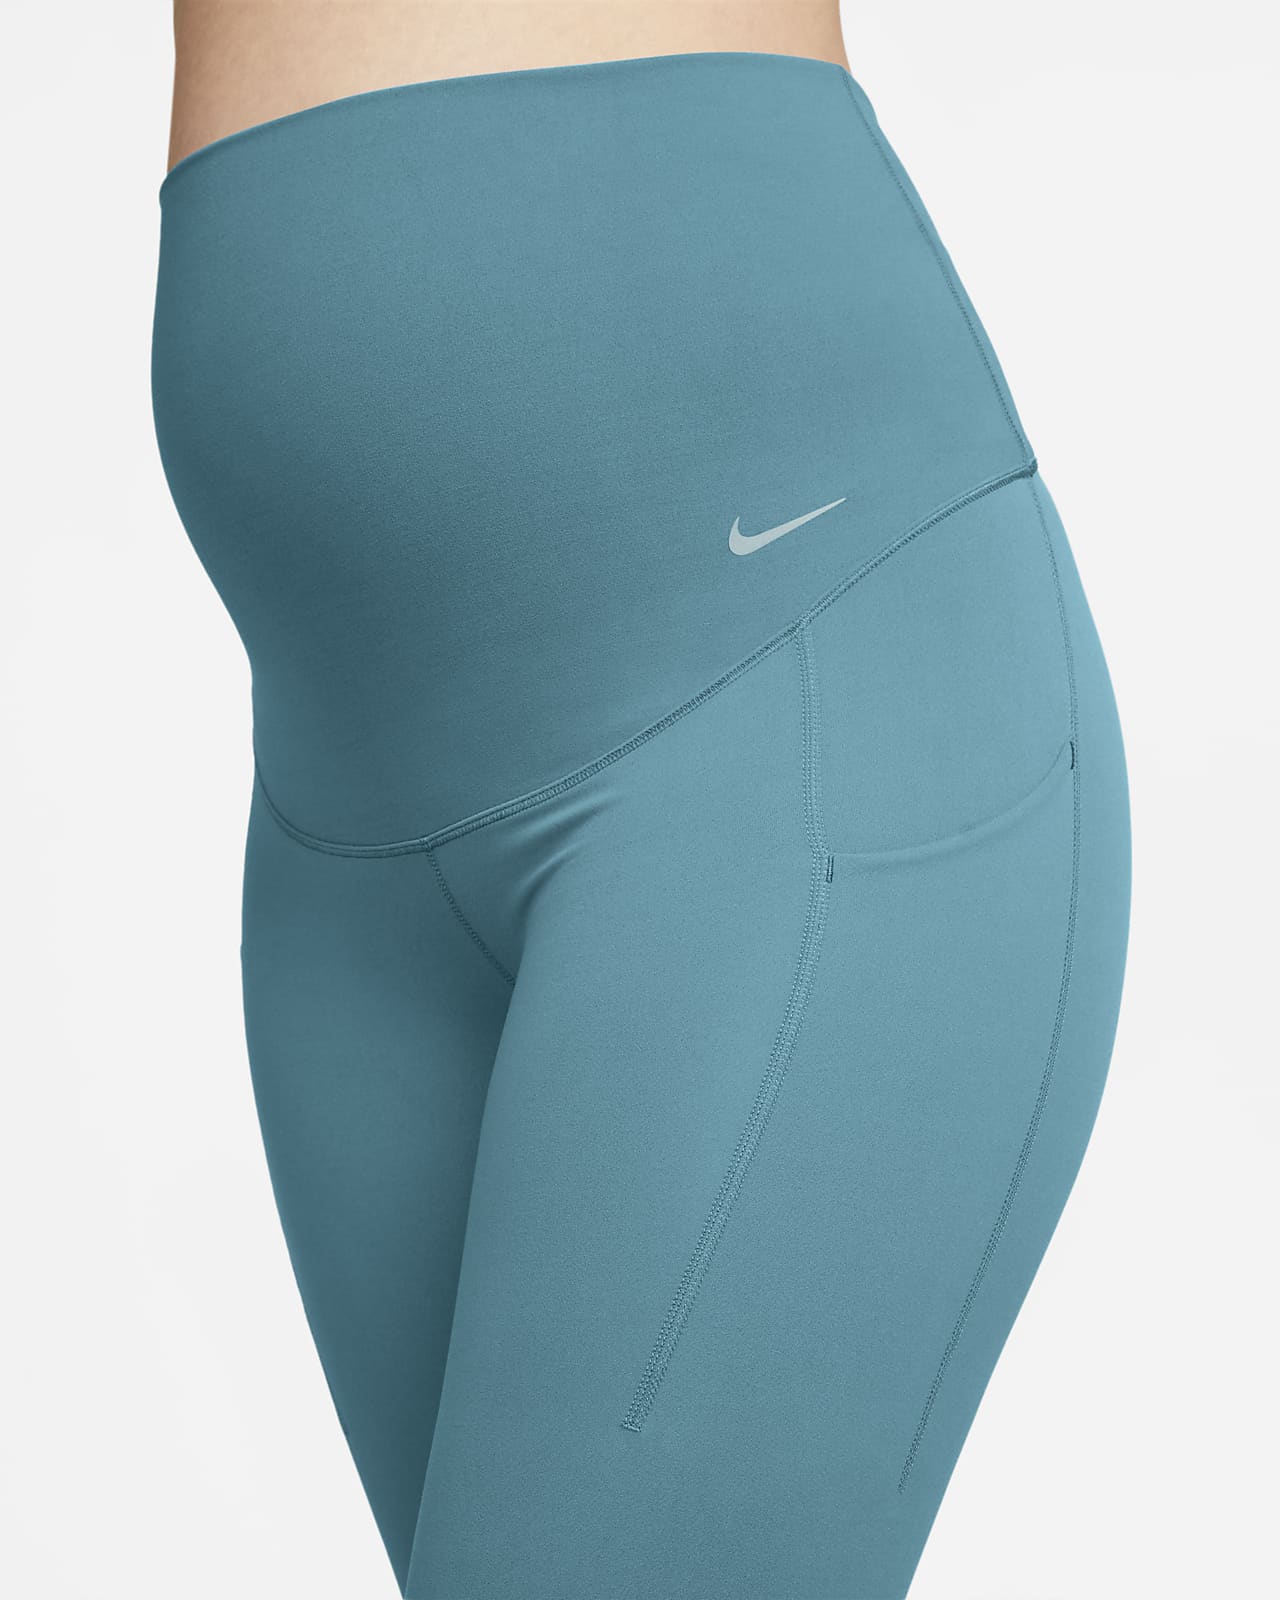 Nike Zenvy (M) 7/8 Women's Maternity Leggings Black DV9432-010